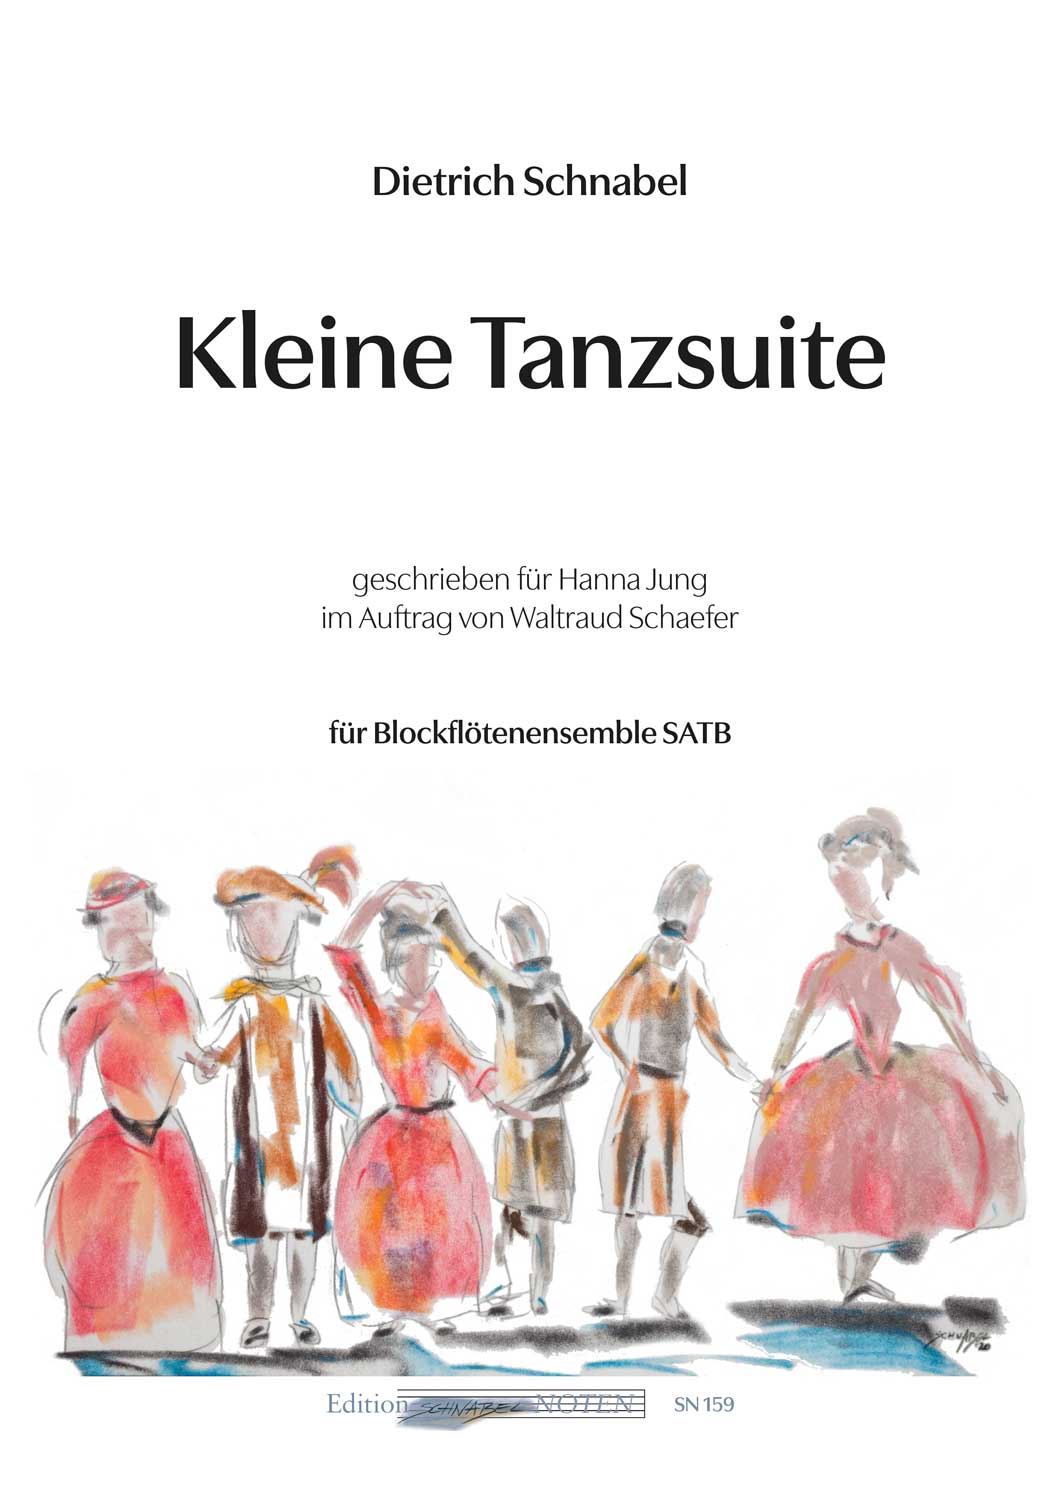 Dietrich Schnabel: Kleine Tanzsuite, Cover